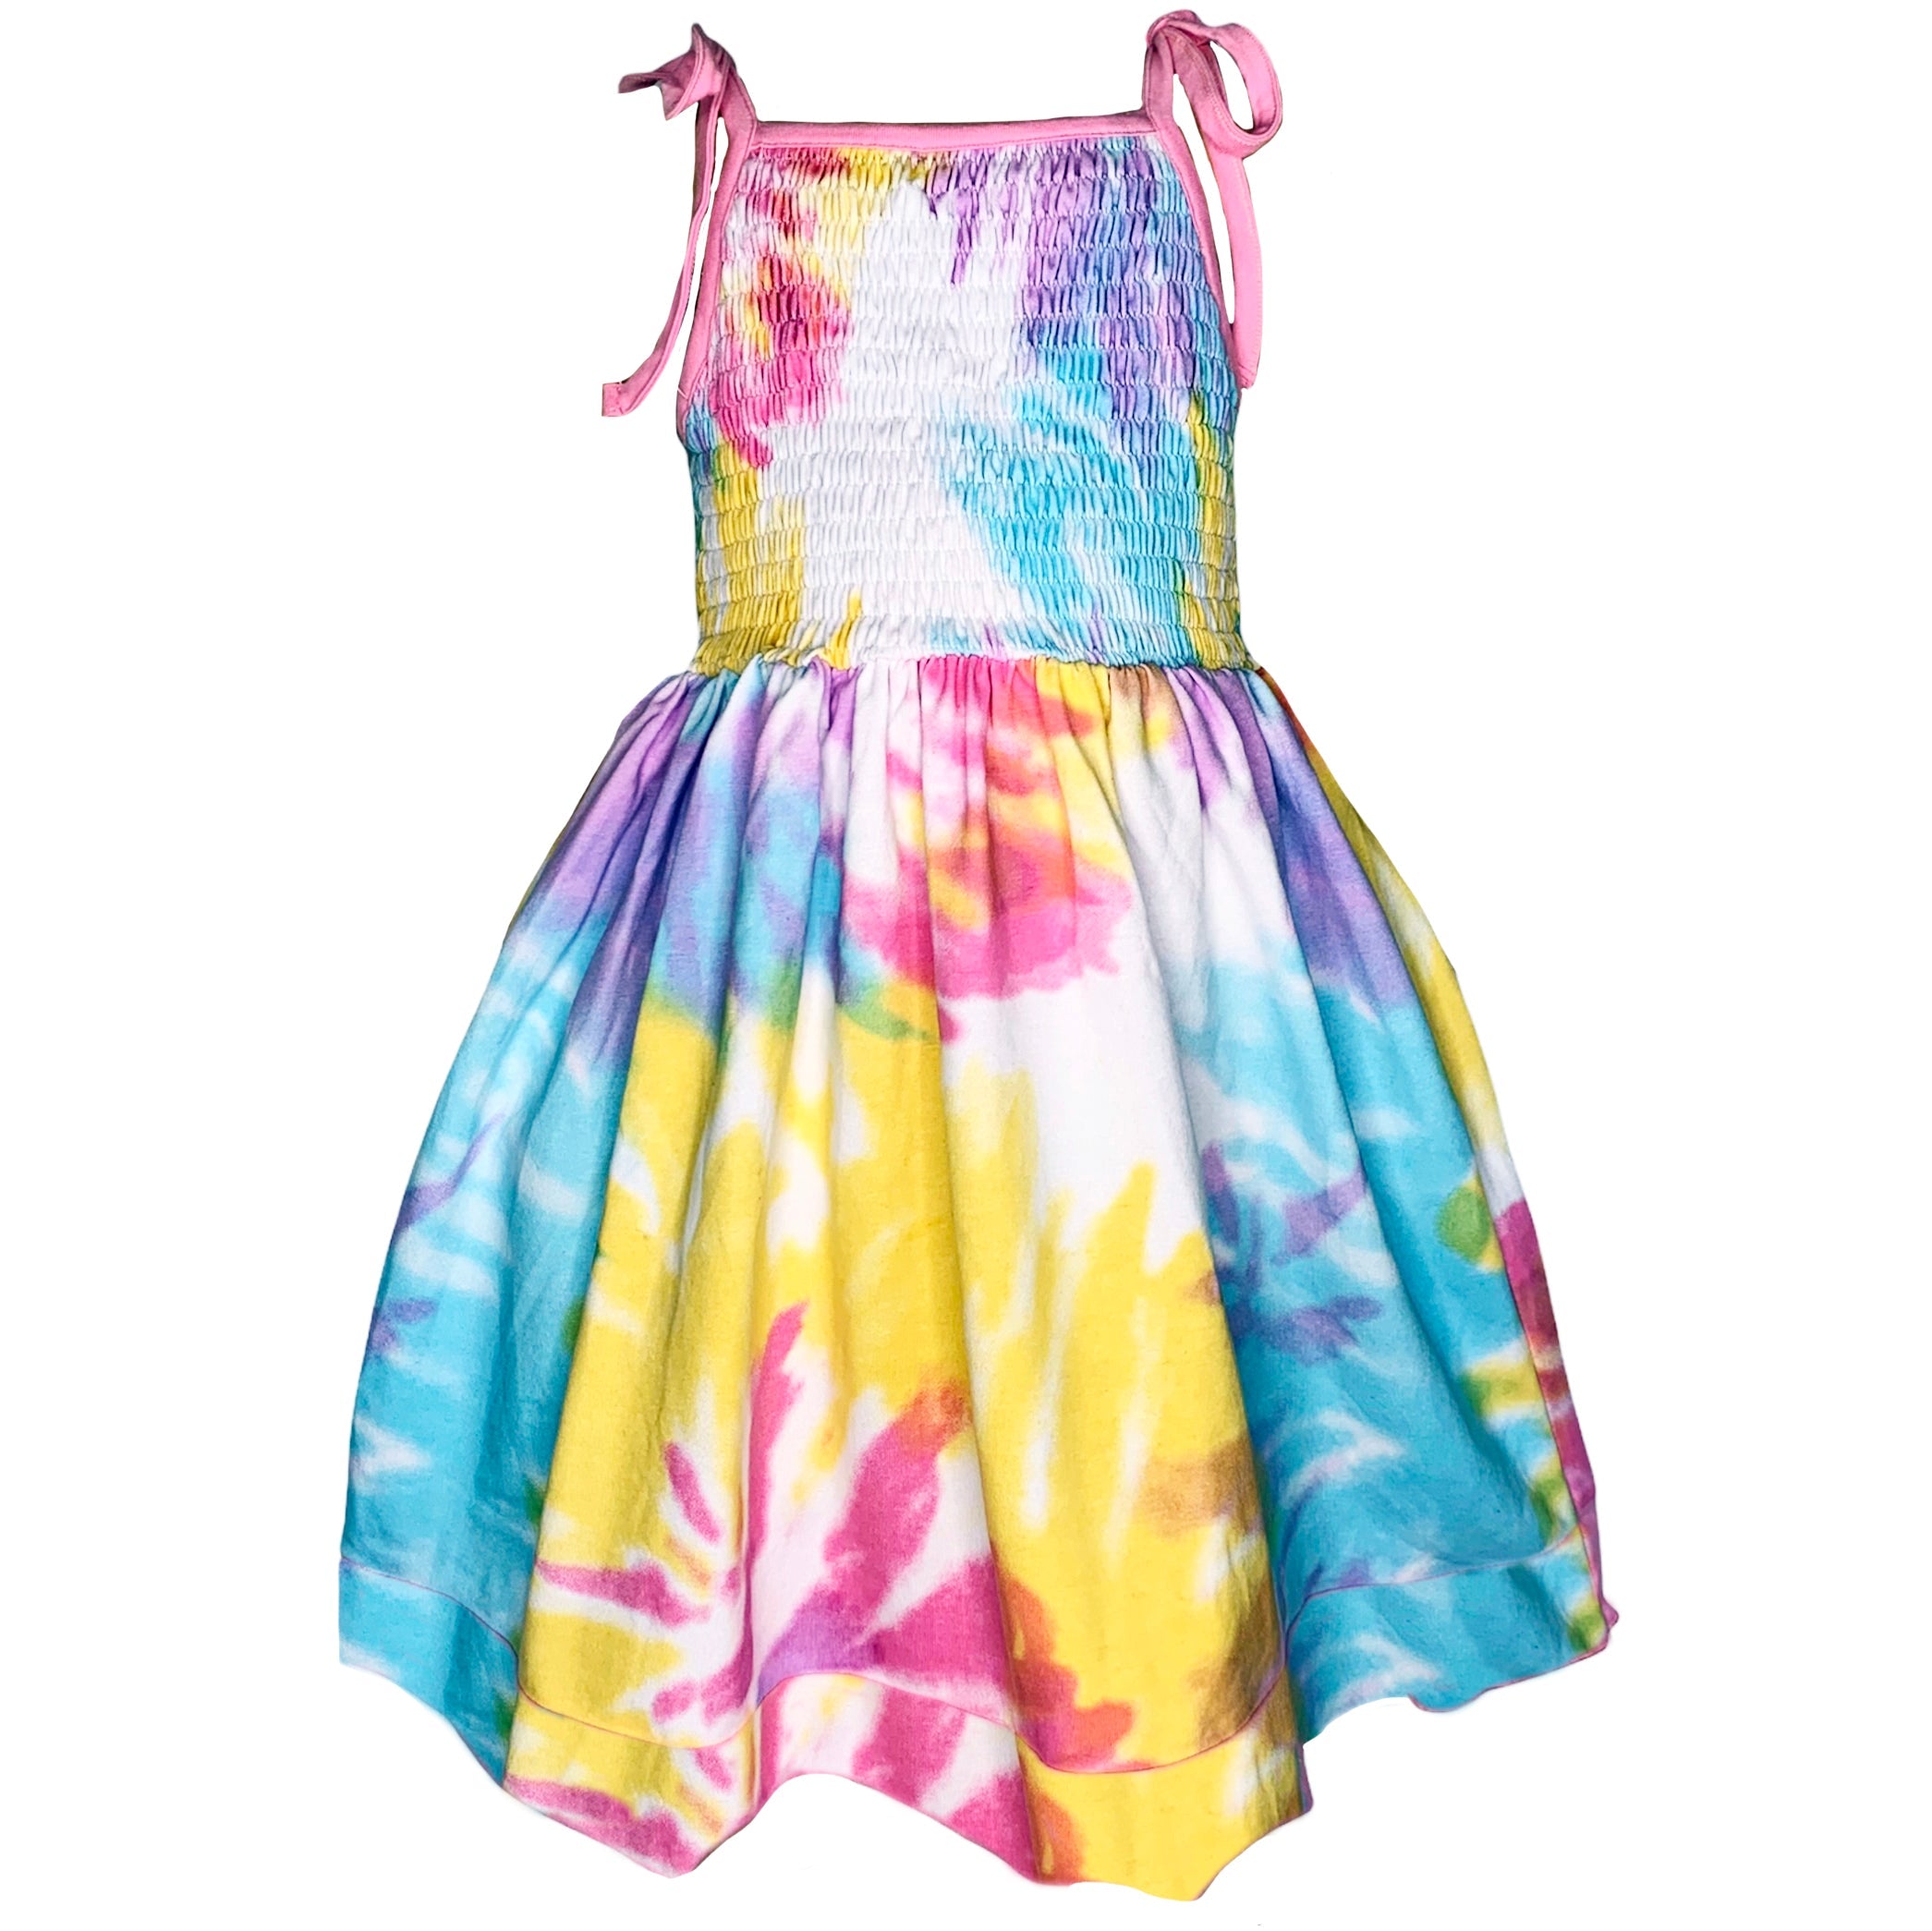 Big Little Girls Pastel Tie Dye Smocked Summer Swing Dress